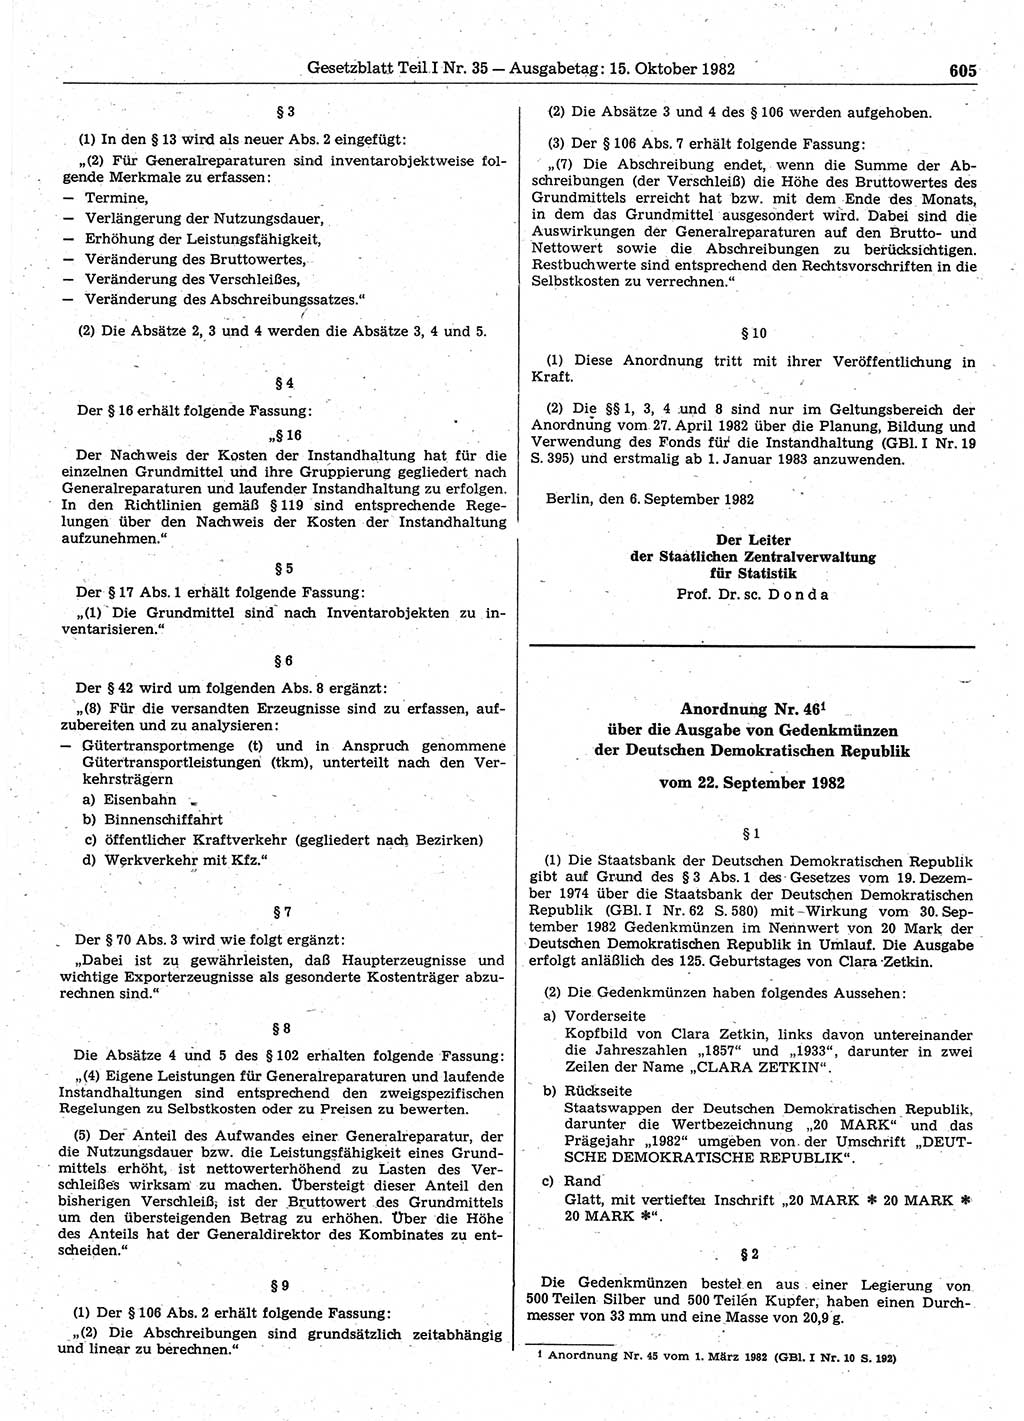 Gesetzblatt (GBl.) der Deutschen Demokratischen Republik (DDR) Teil Ⅰ 1982, Seite 605 (GBl. DDR Ⅰ 1982, S. 605)